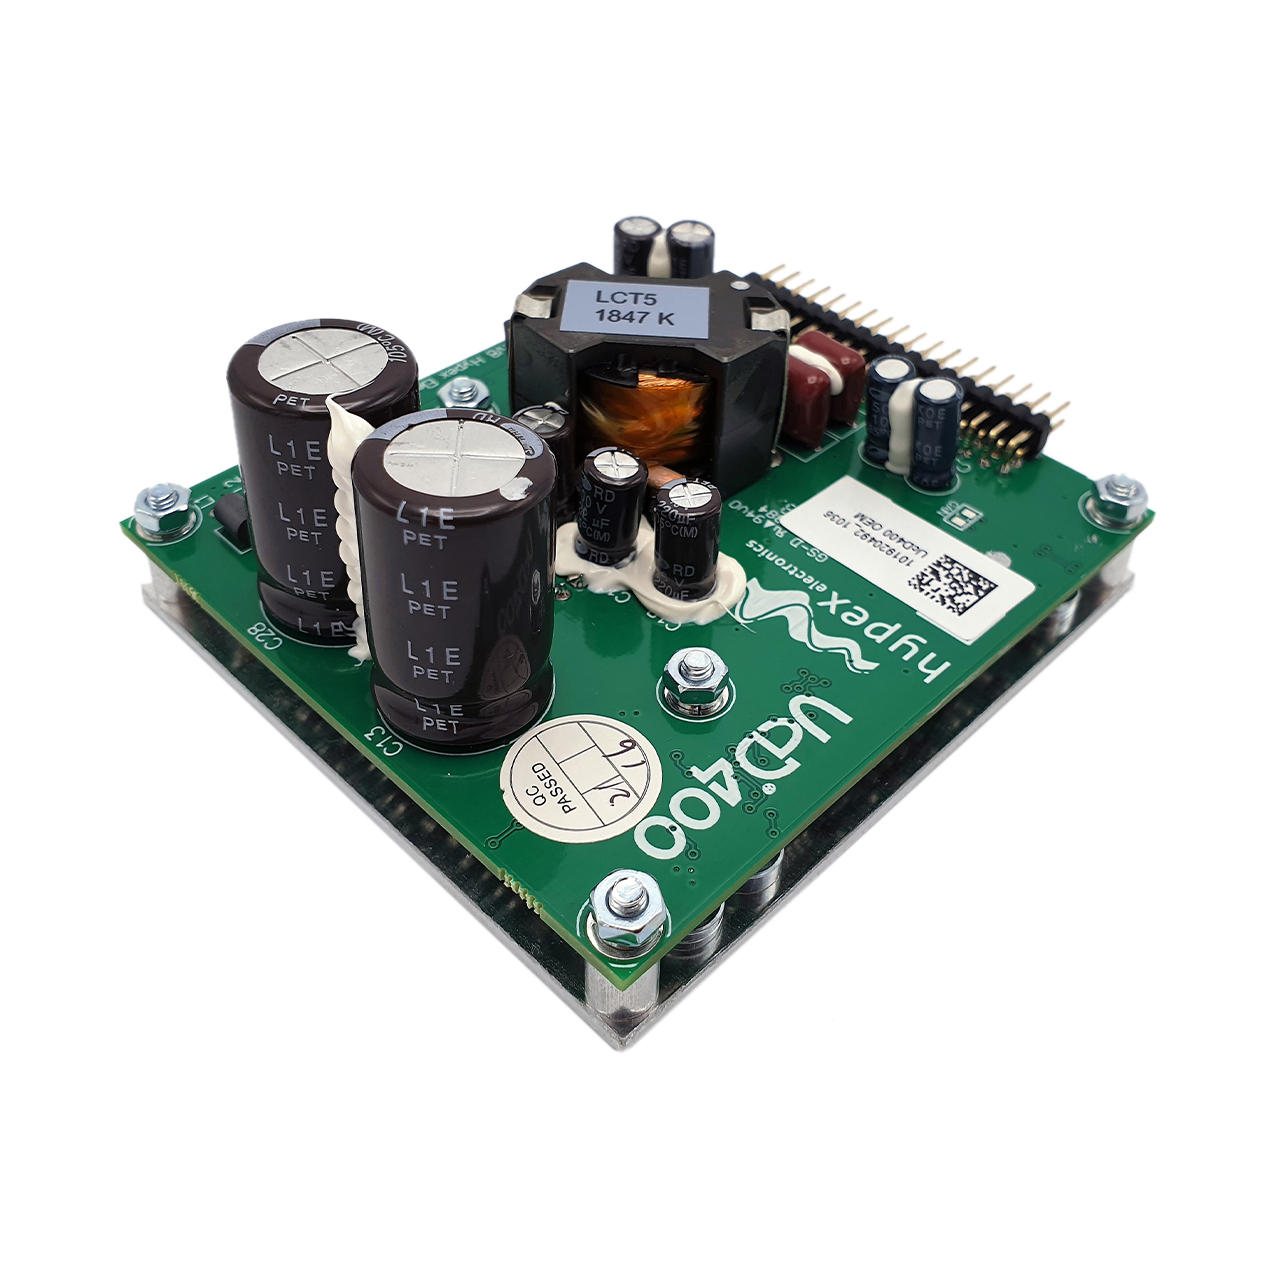 Hypex UcD™ 400 OEM amplifier module